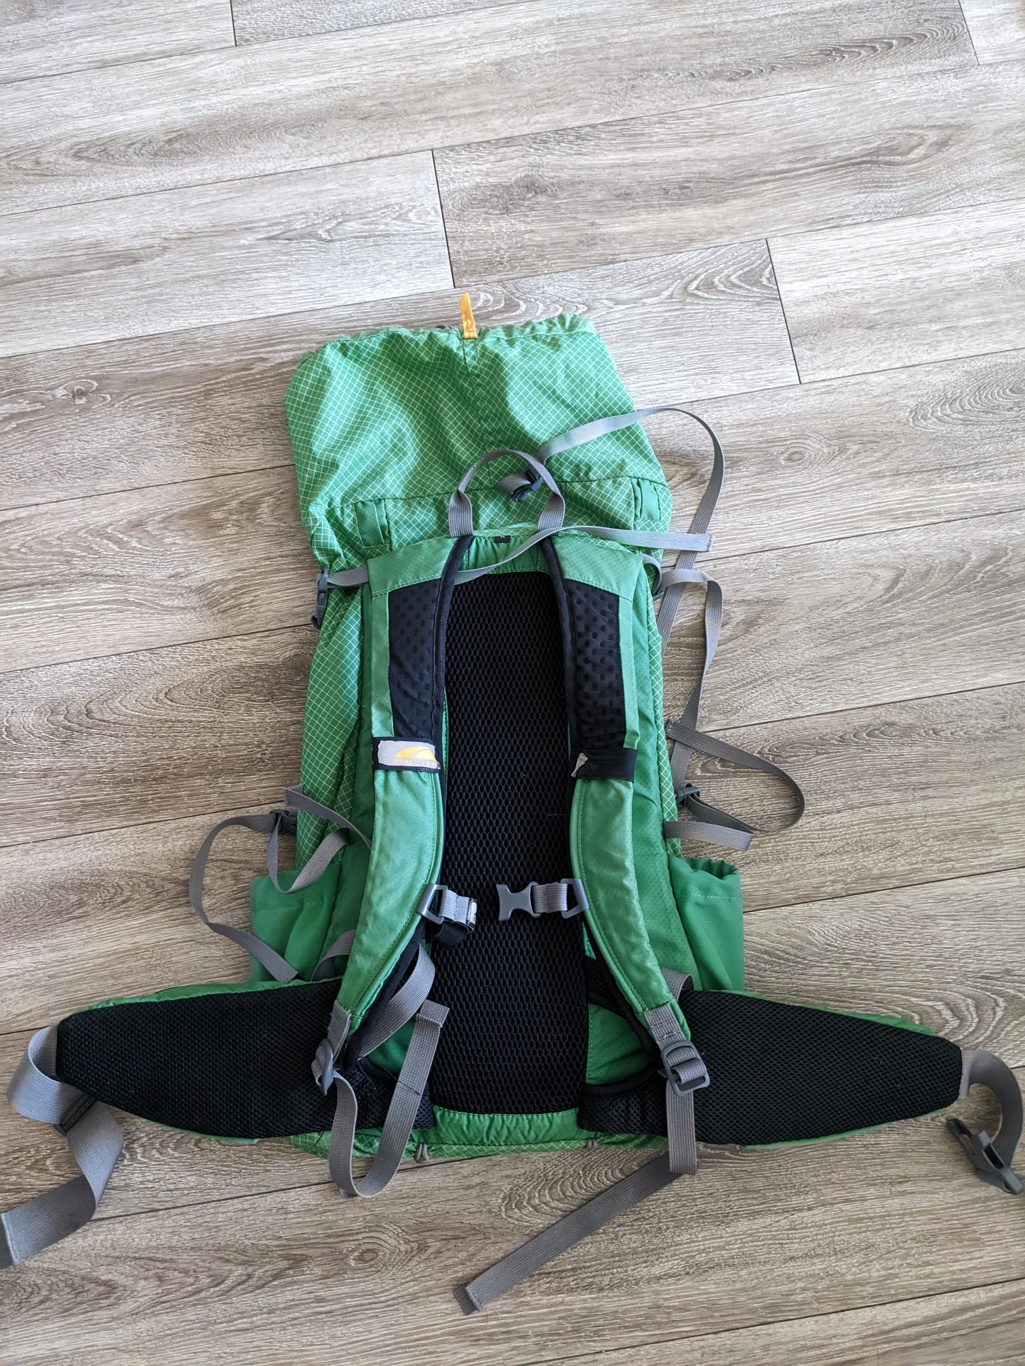 Golite Jam 35 Backpack Size Medium - Backpacking Light